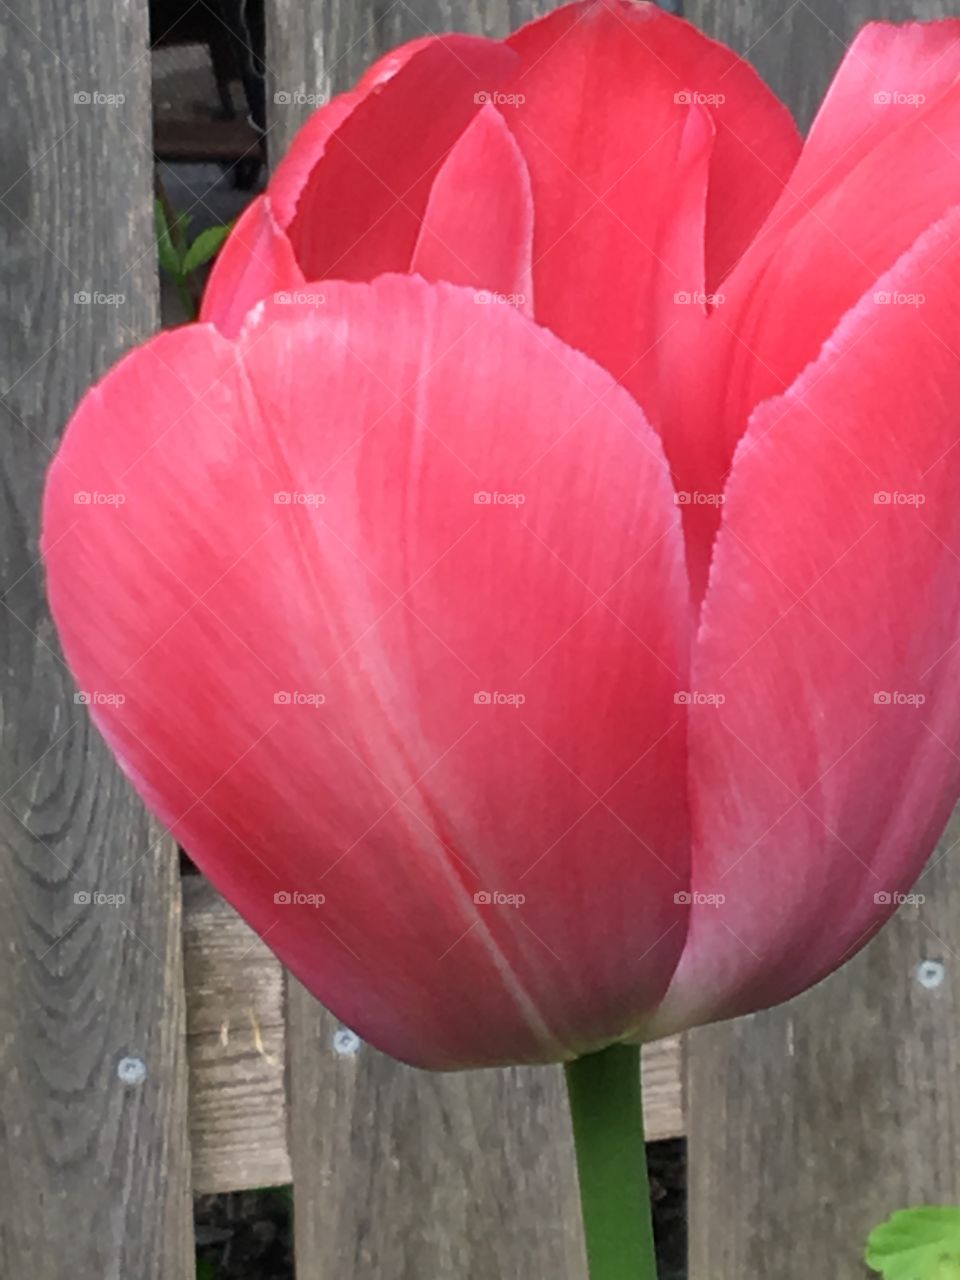 Dark pink tulip head